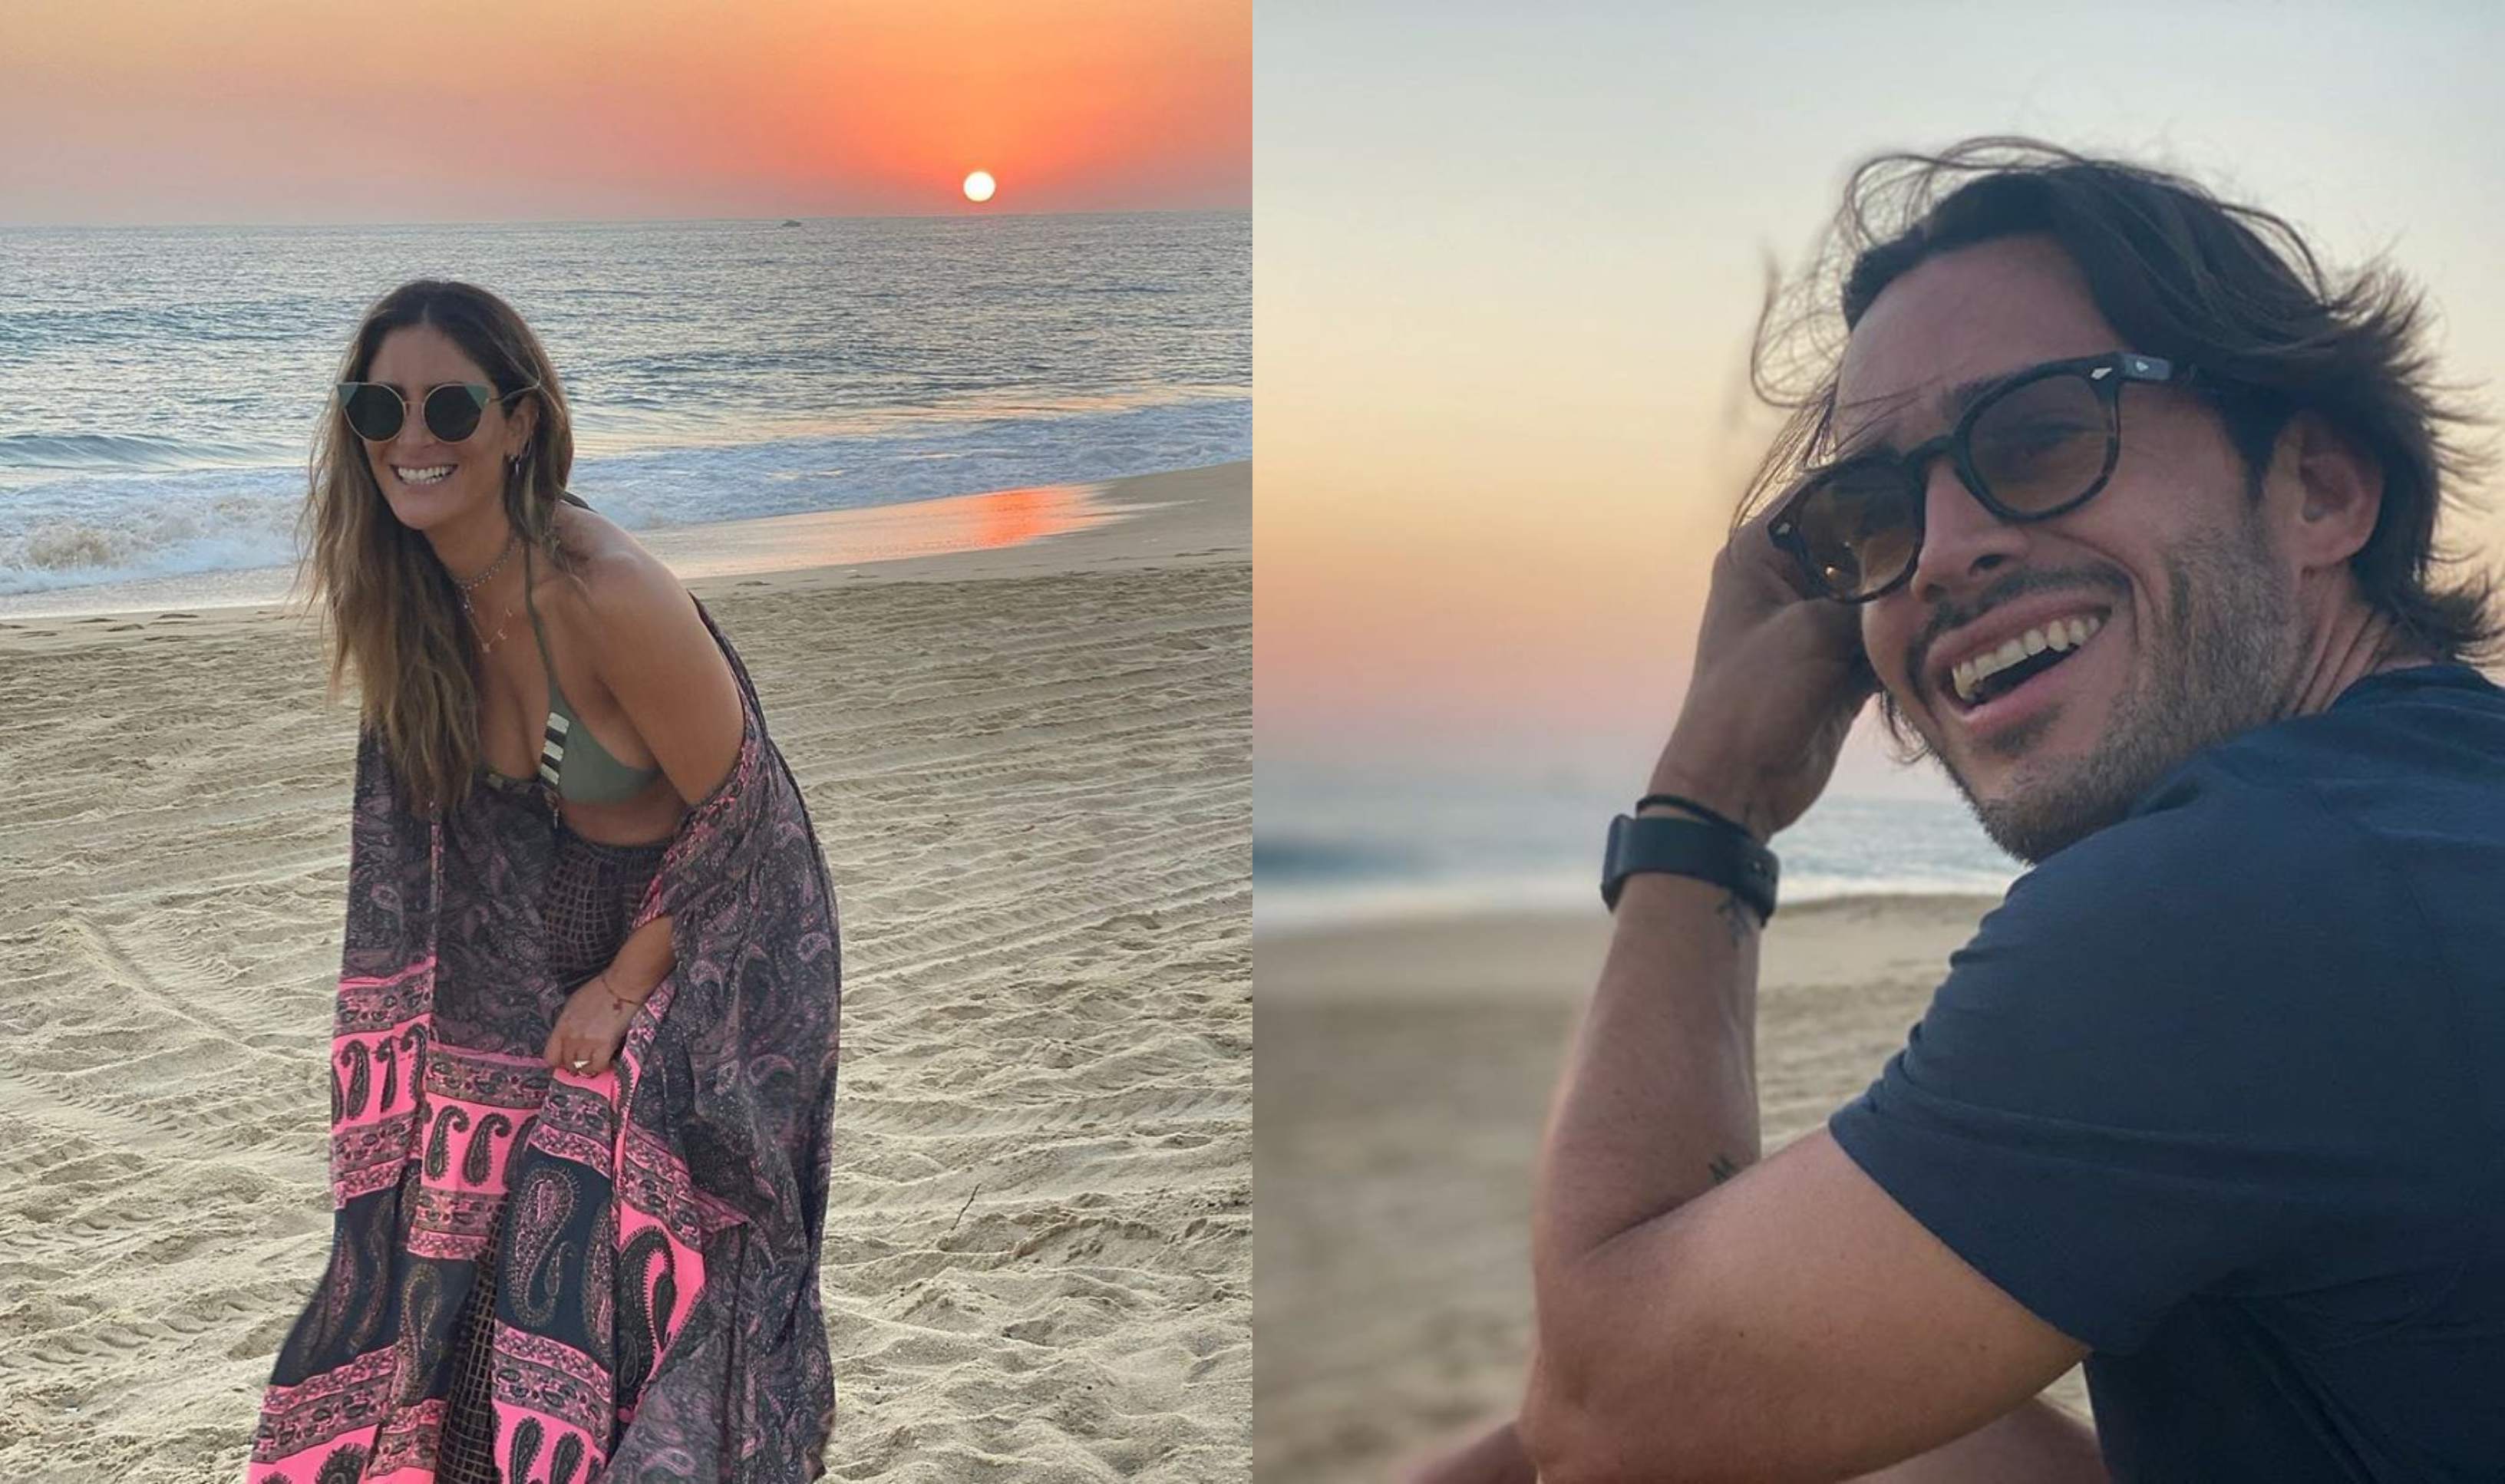 Los famosos compartieron sendas fotos donde se aprecia el mismo atardecer en la playa, aunque trataron de ser discretos al no posar juntos (Foto: Instagram @melissalopez @ponchobaca)